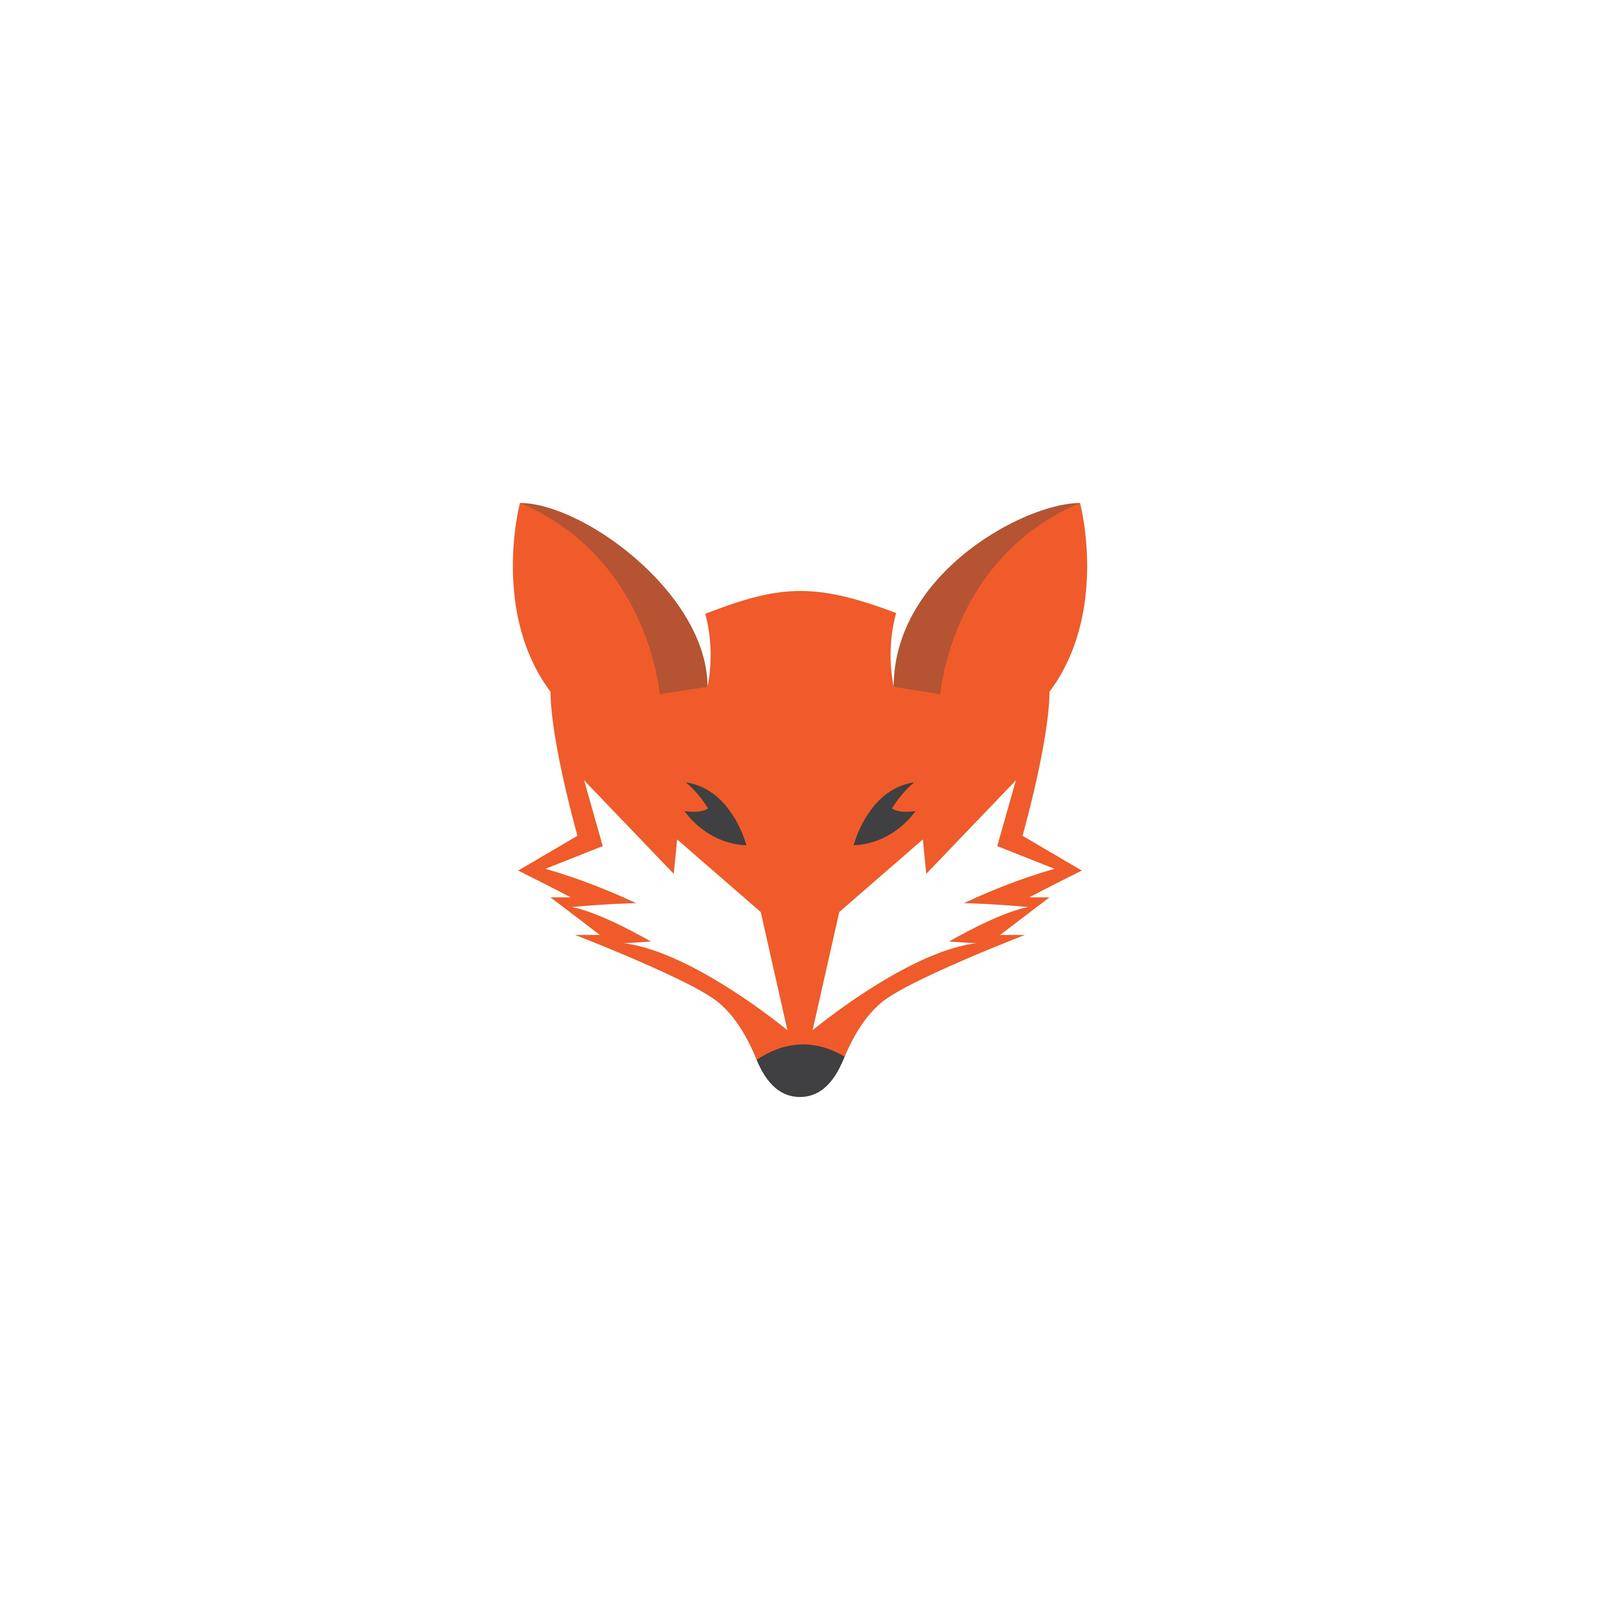 Fox logo illustration by awk